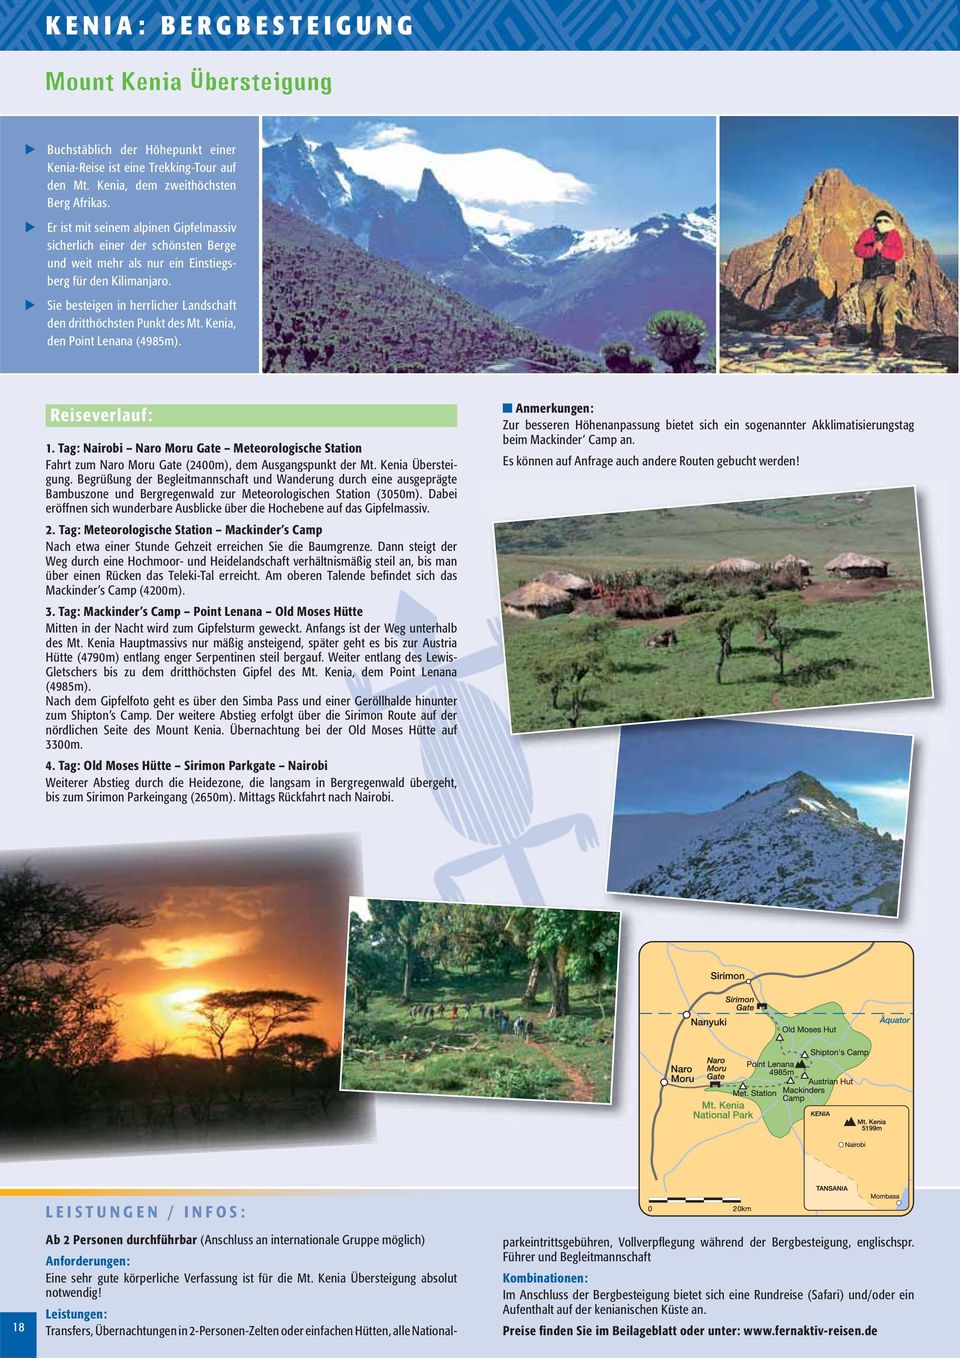 Sie besteigen in herrlicher Landschaft den dritthöchsten Punkt des Mt. Kenia, den Point Lenana (4985m). Reiseverlauf: 1.